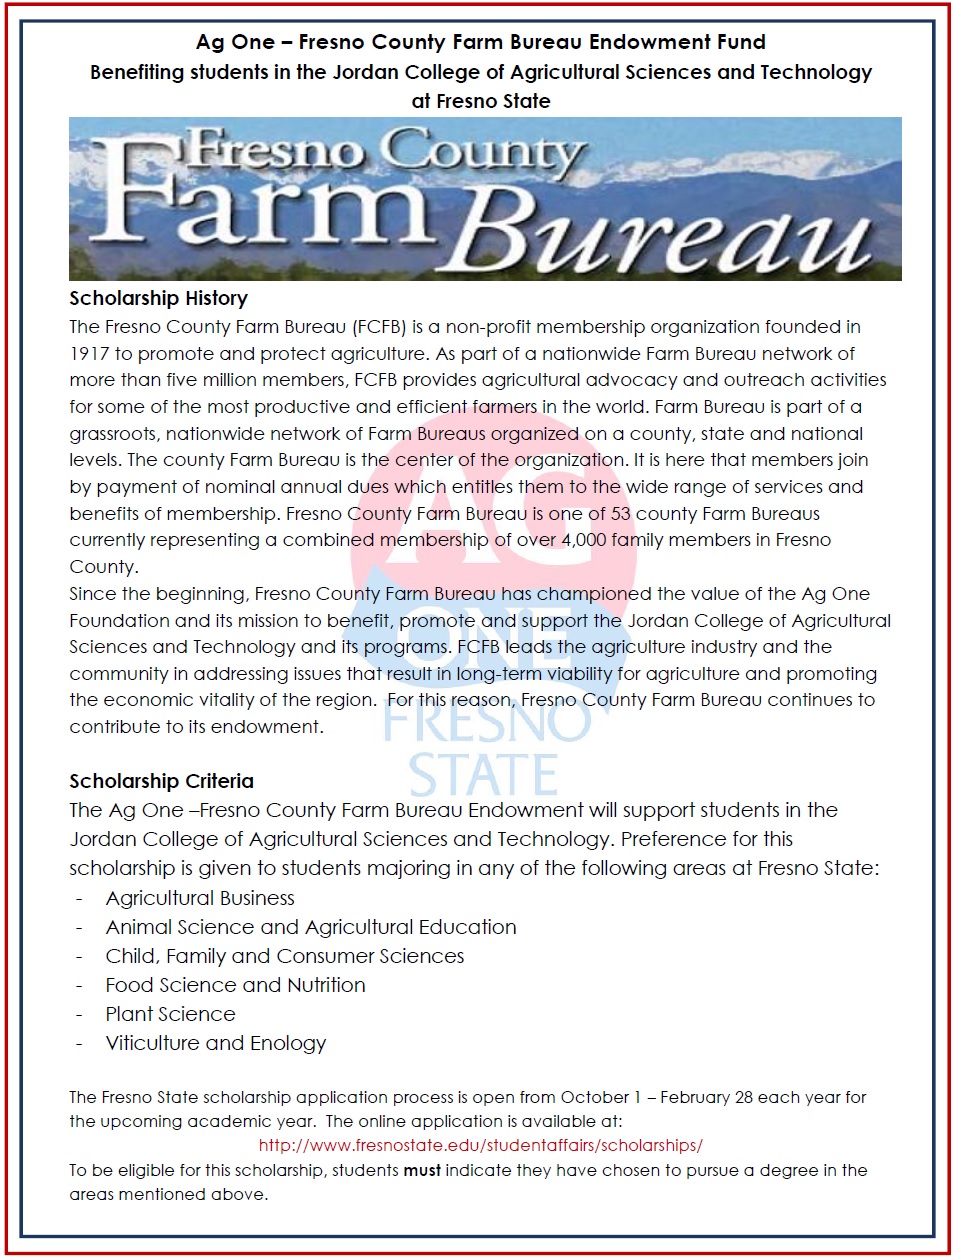 Fresno County Farm Bureau Endowment Description